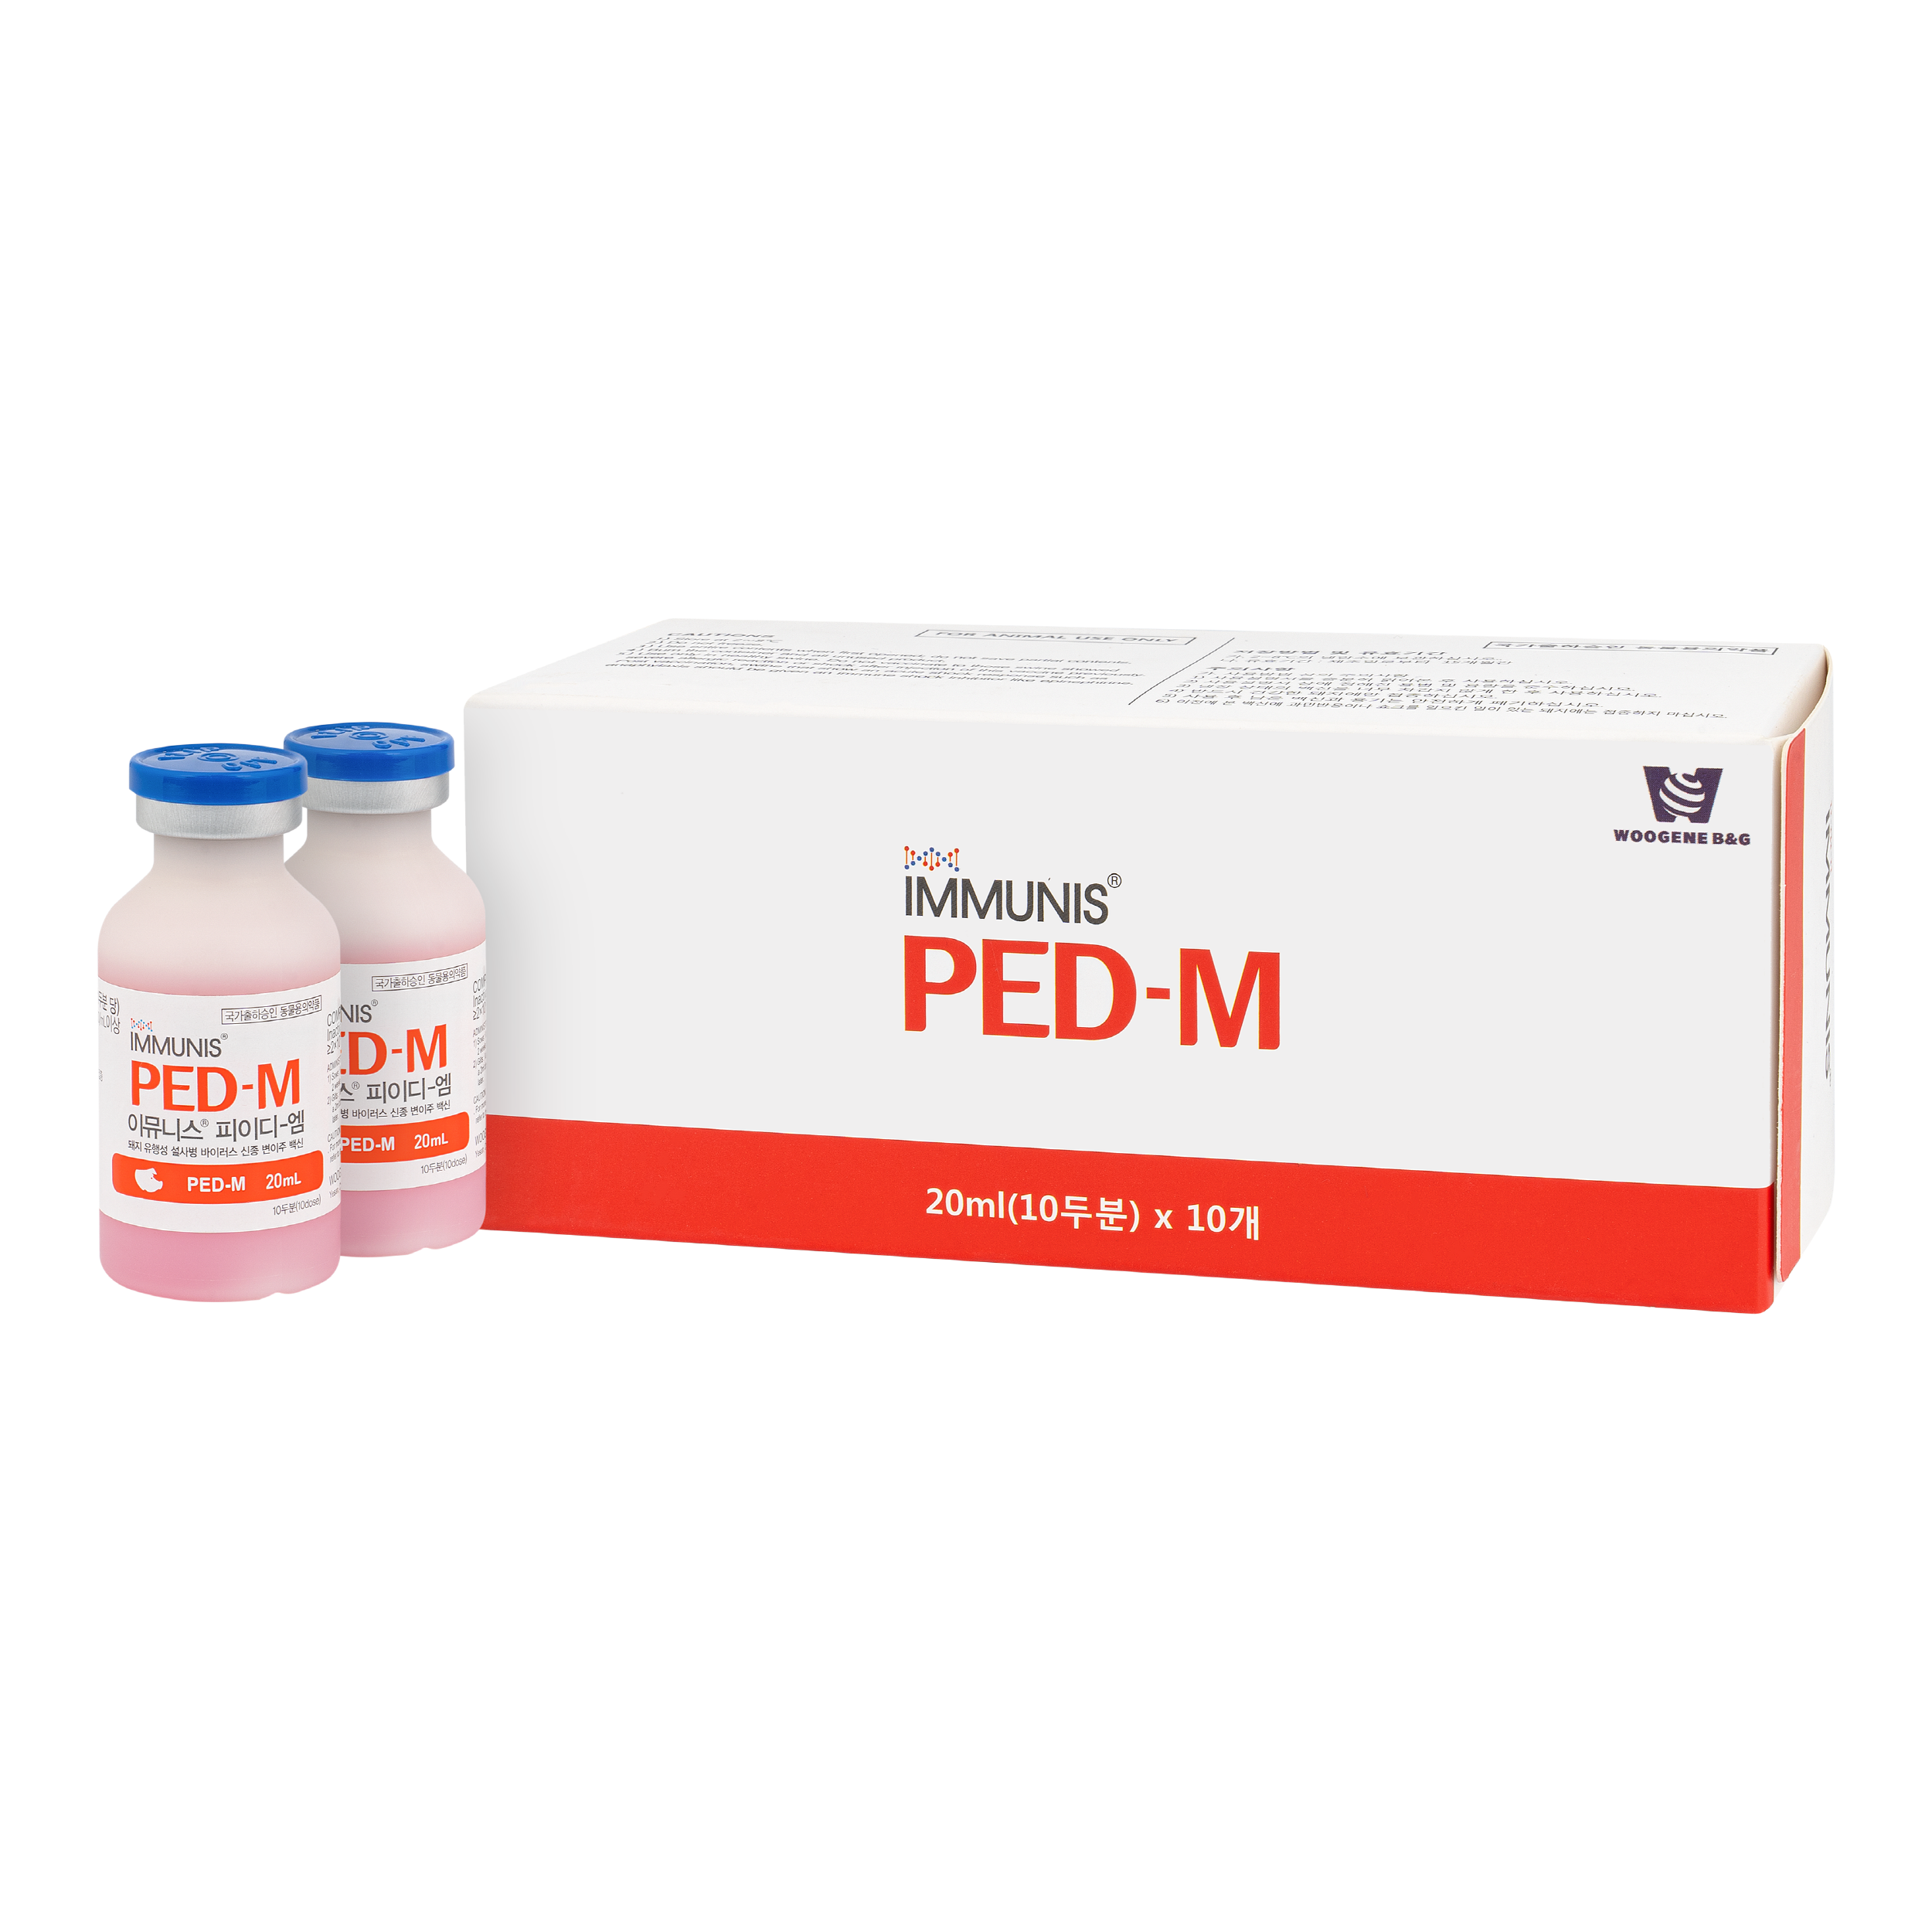 Immunis PED-M